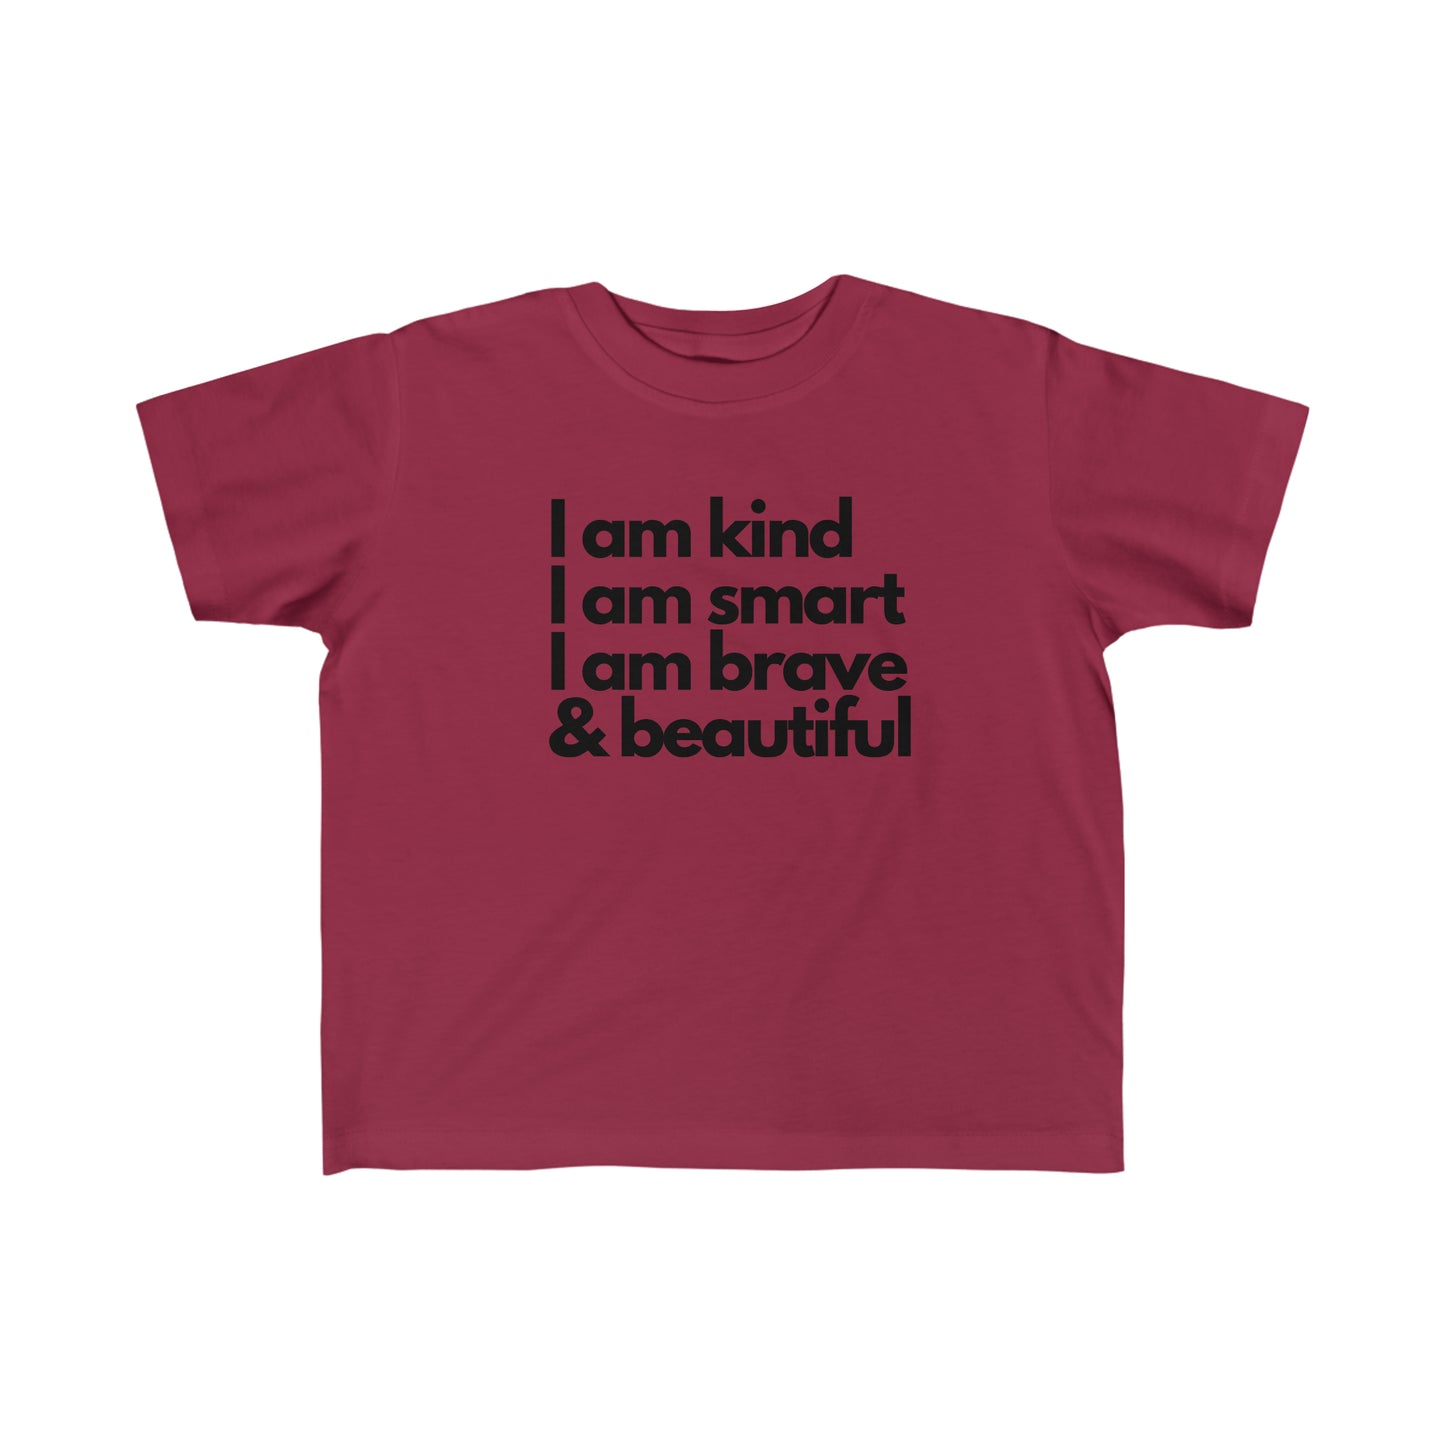 I am kind, I am smart, I am brave & beautiful - Kid's Fine Jersey Tee